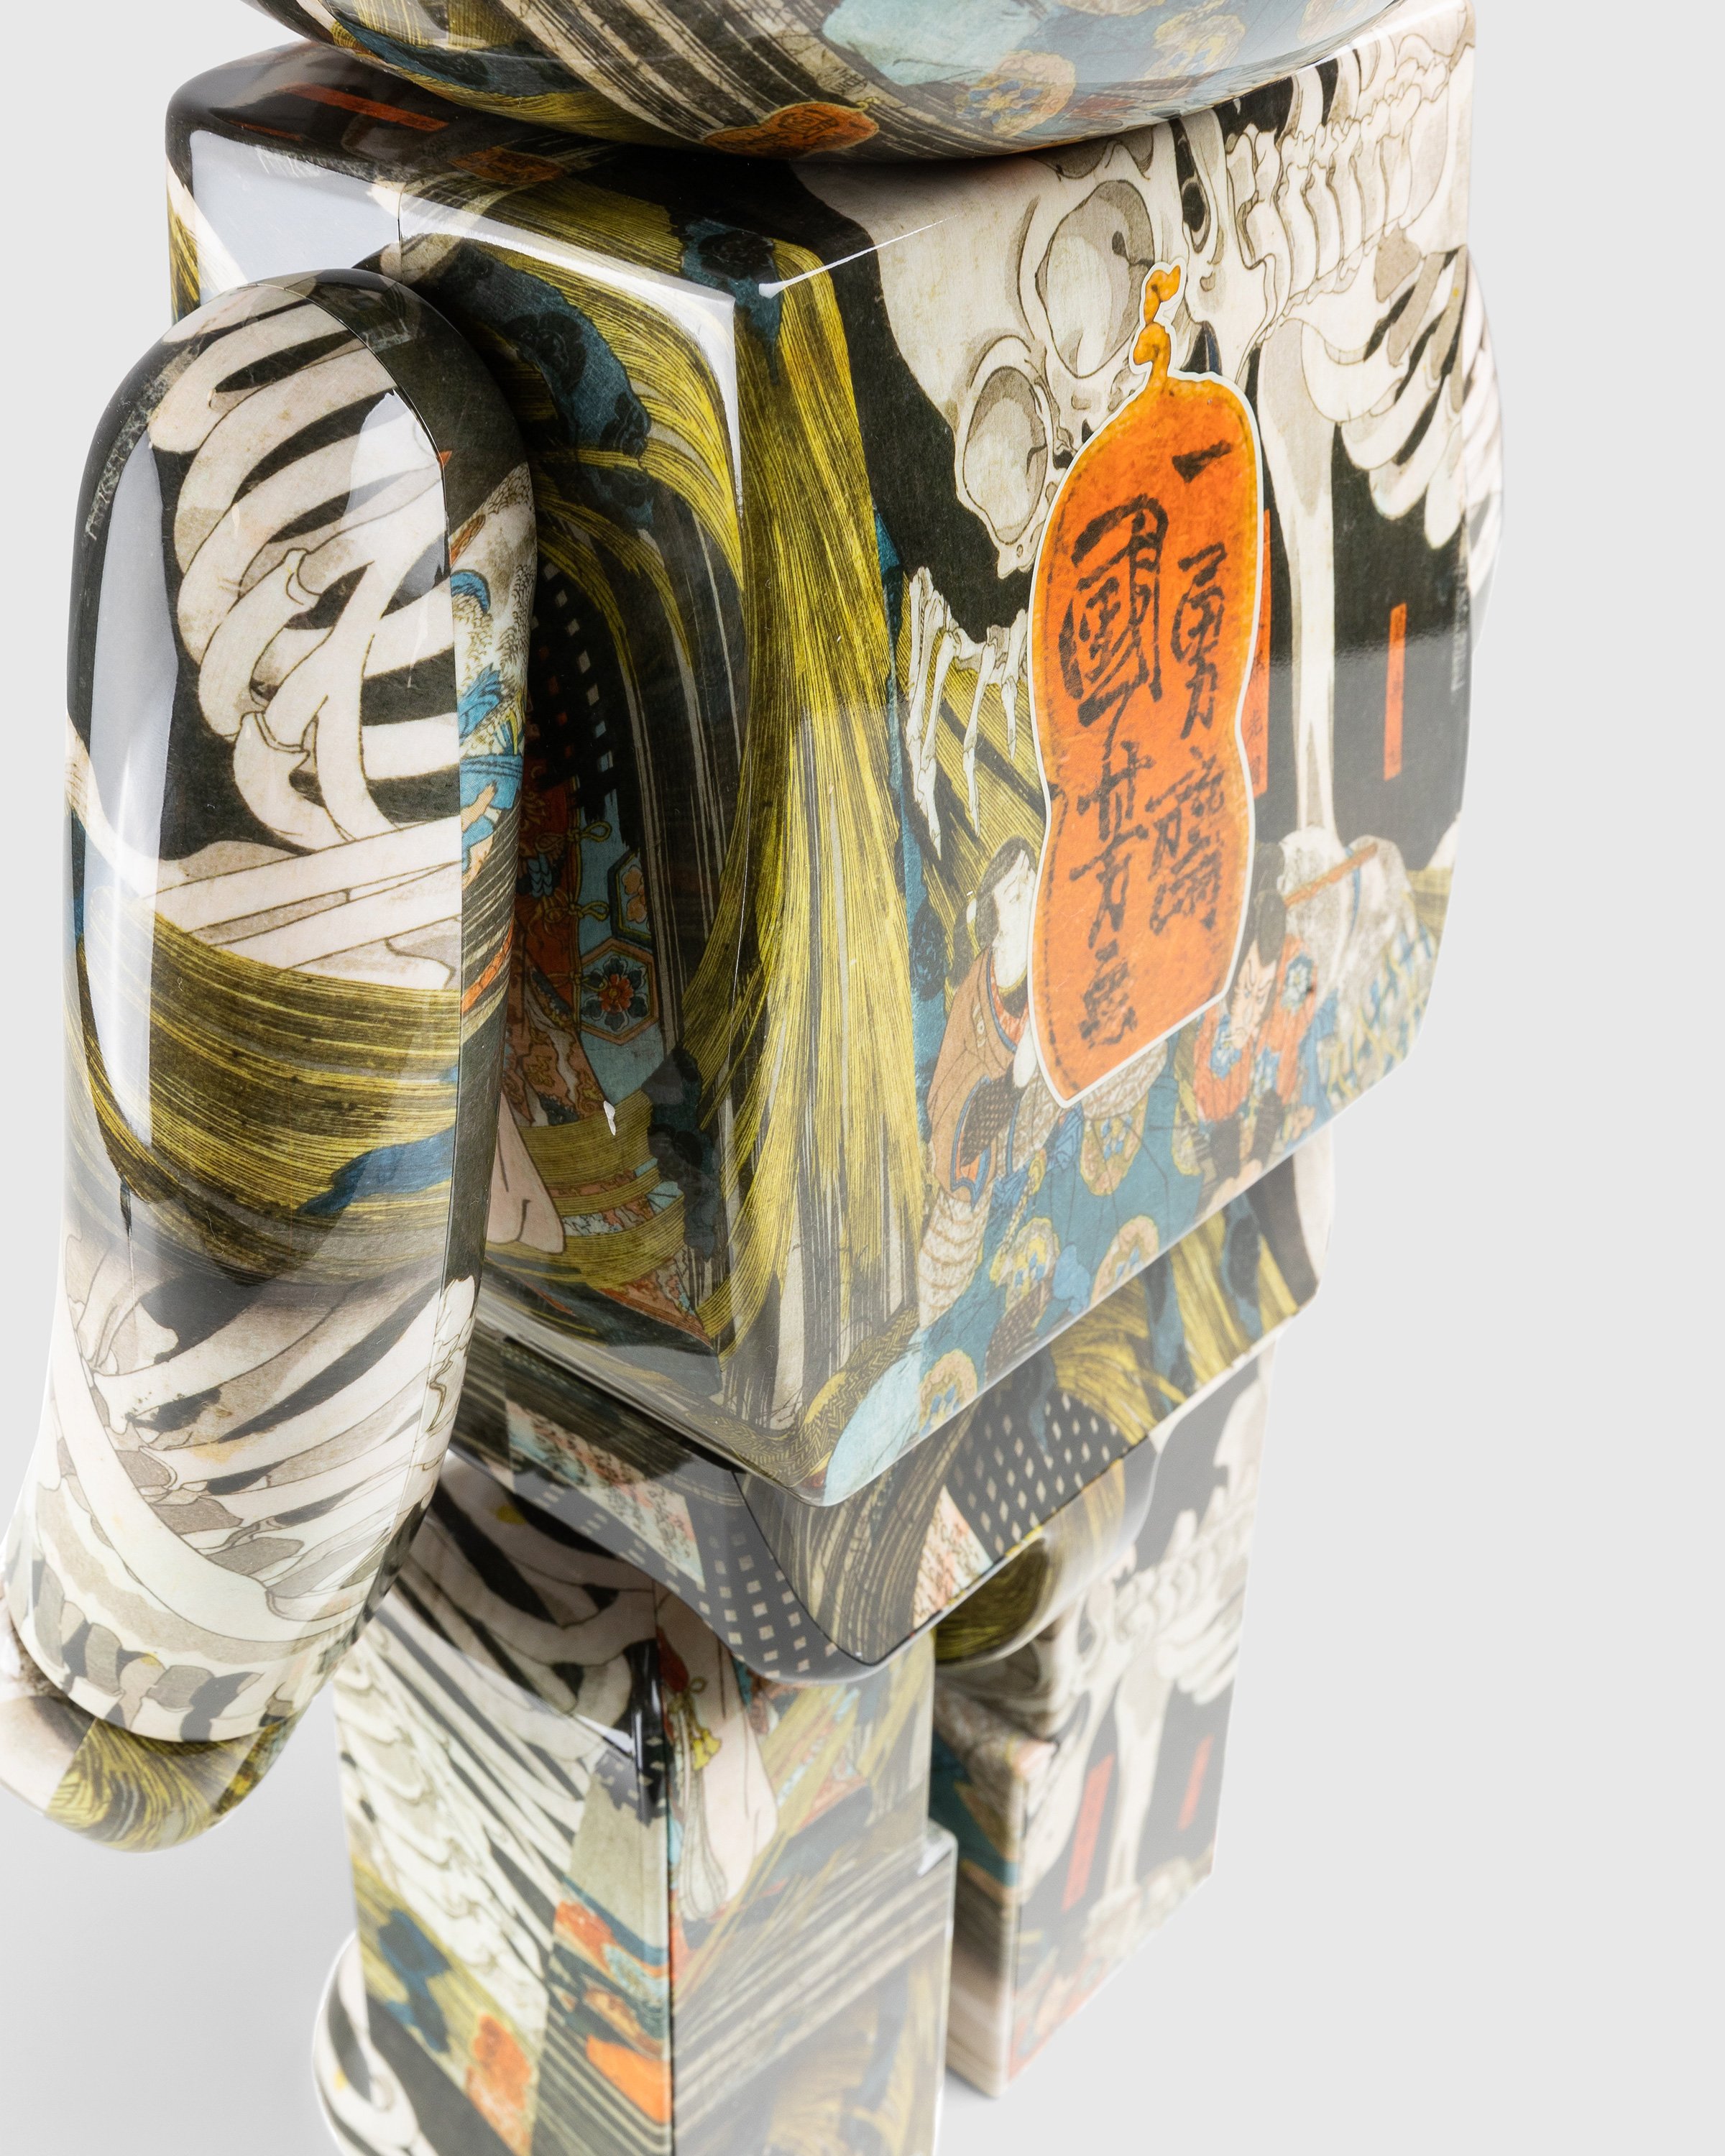 Medicom - Be@rbrick Utagawa Kuniyoshi The Haunted Old Palace at Soma 1000% Brown - Lifestyle - Multi - Image 6